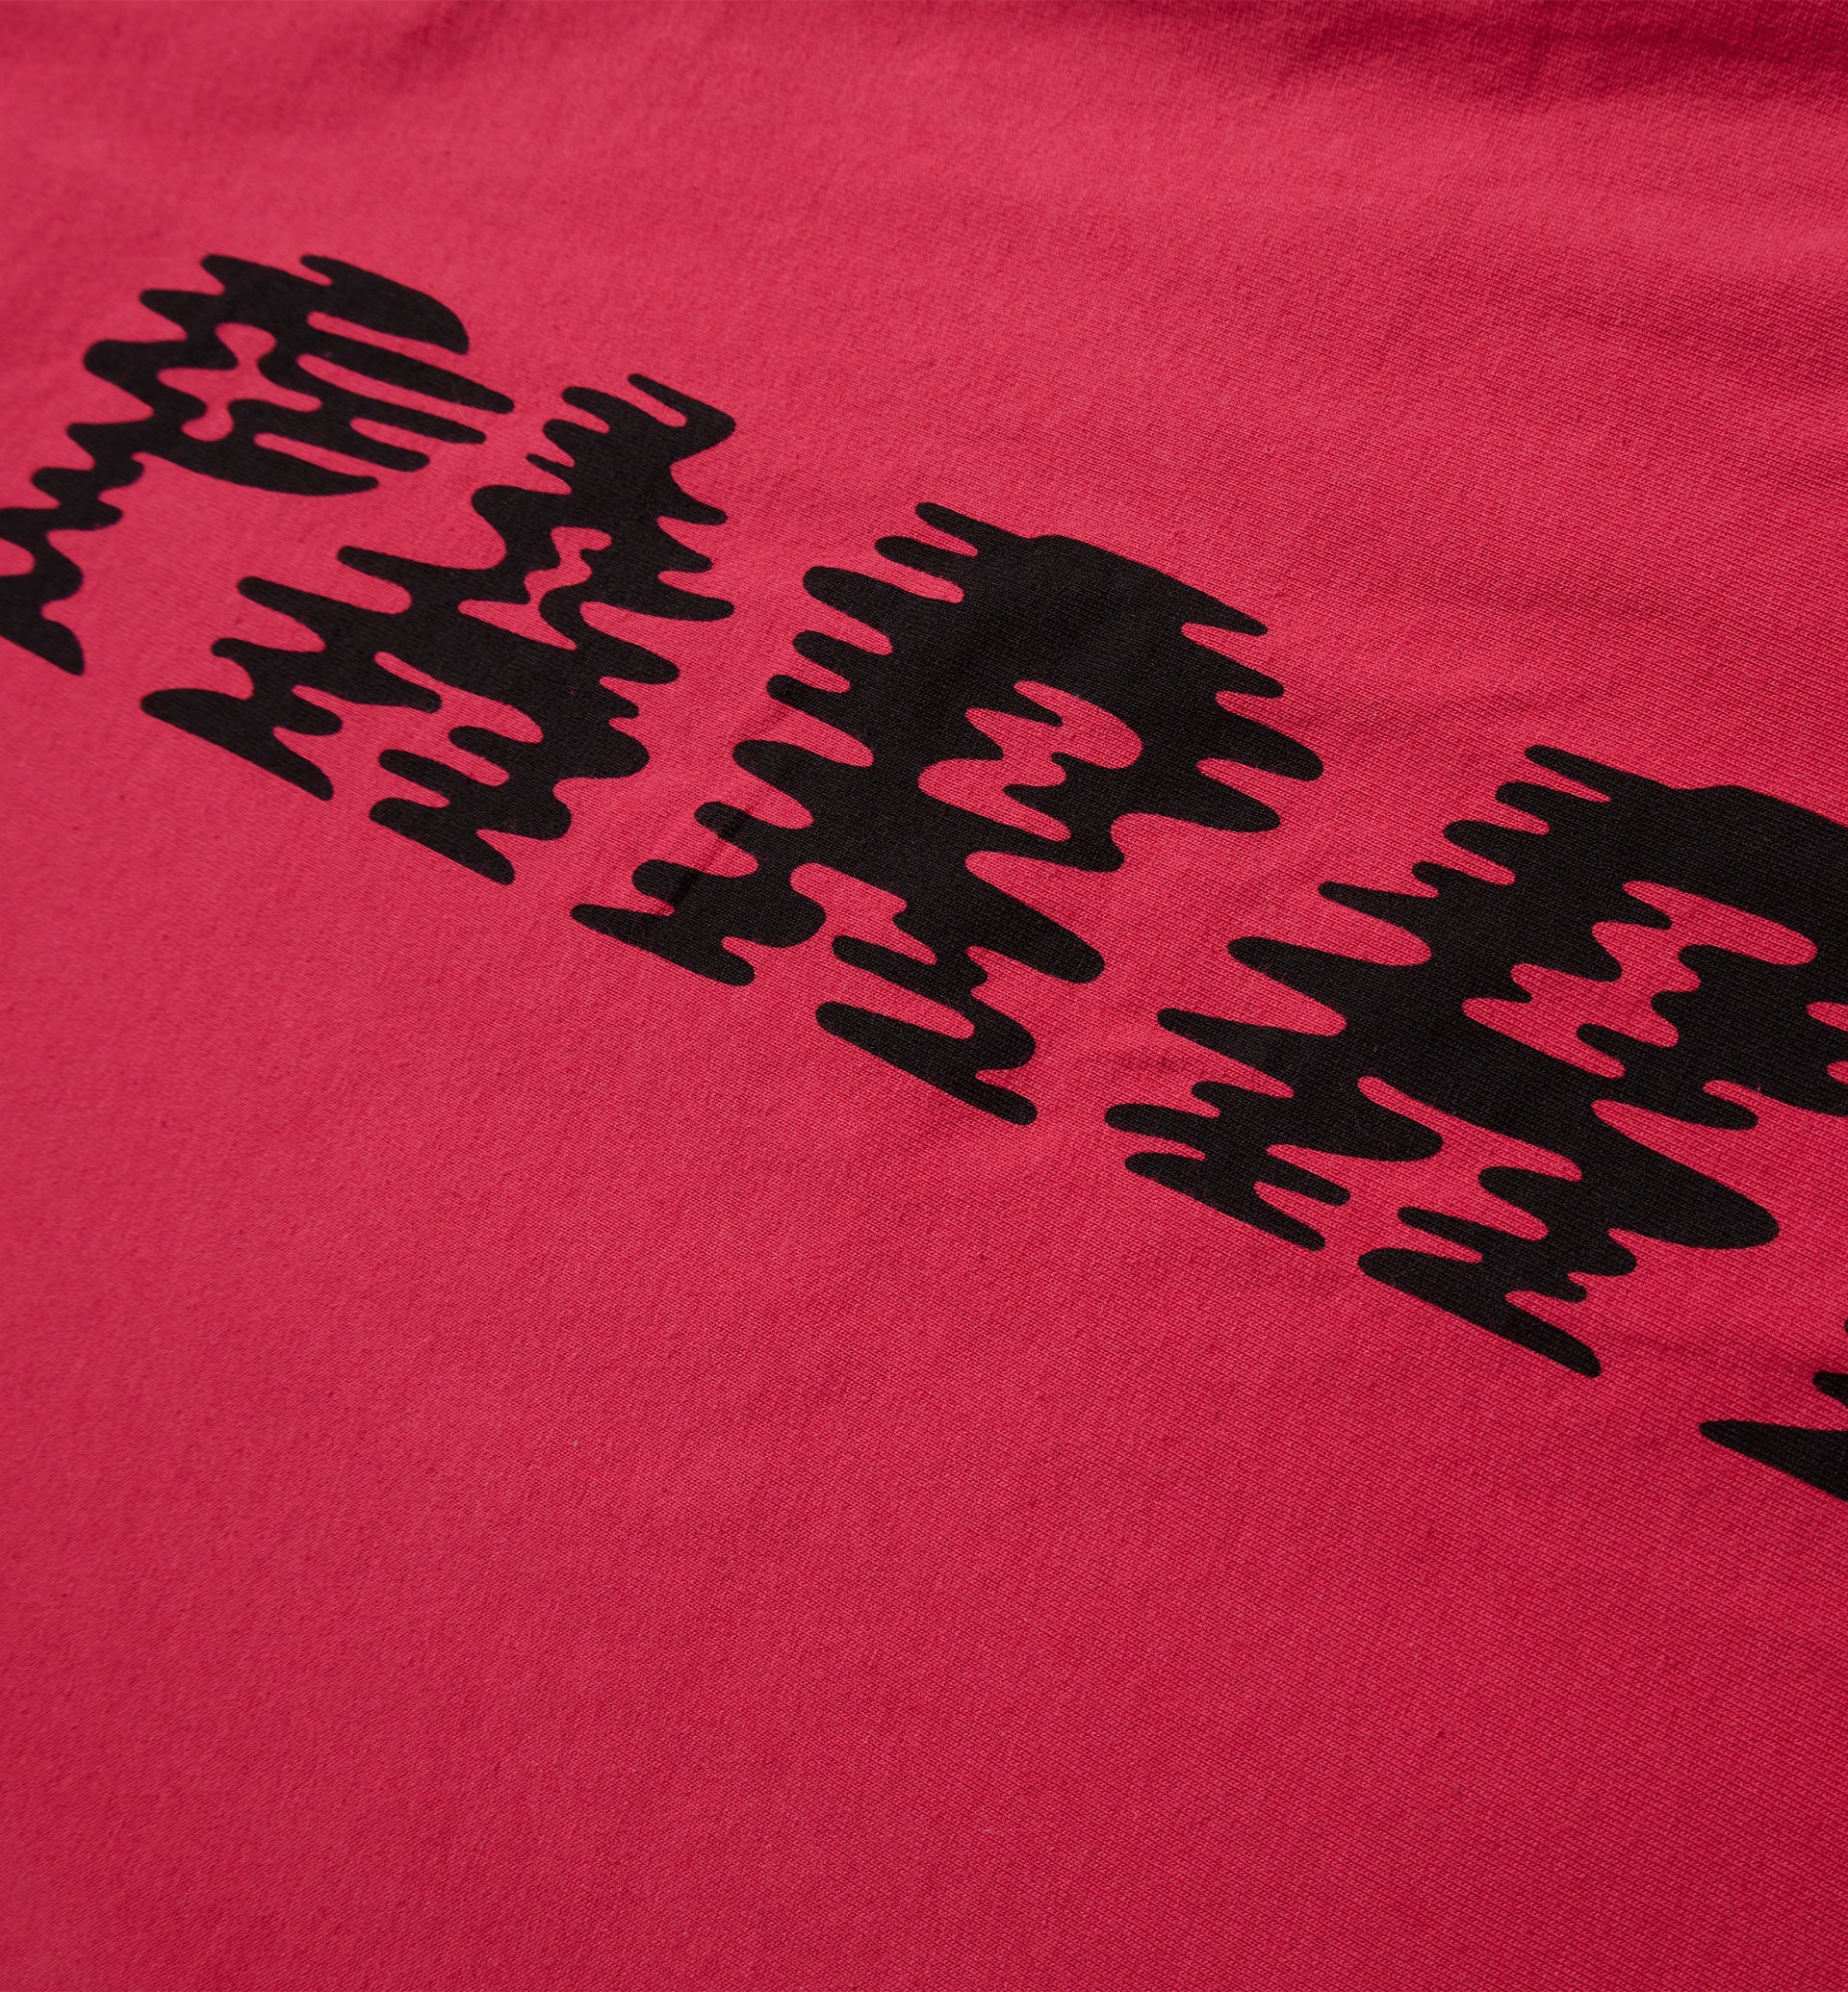 Parra - wave block tremors t-shirt